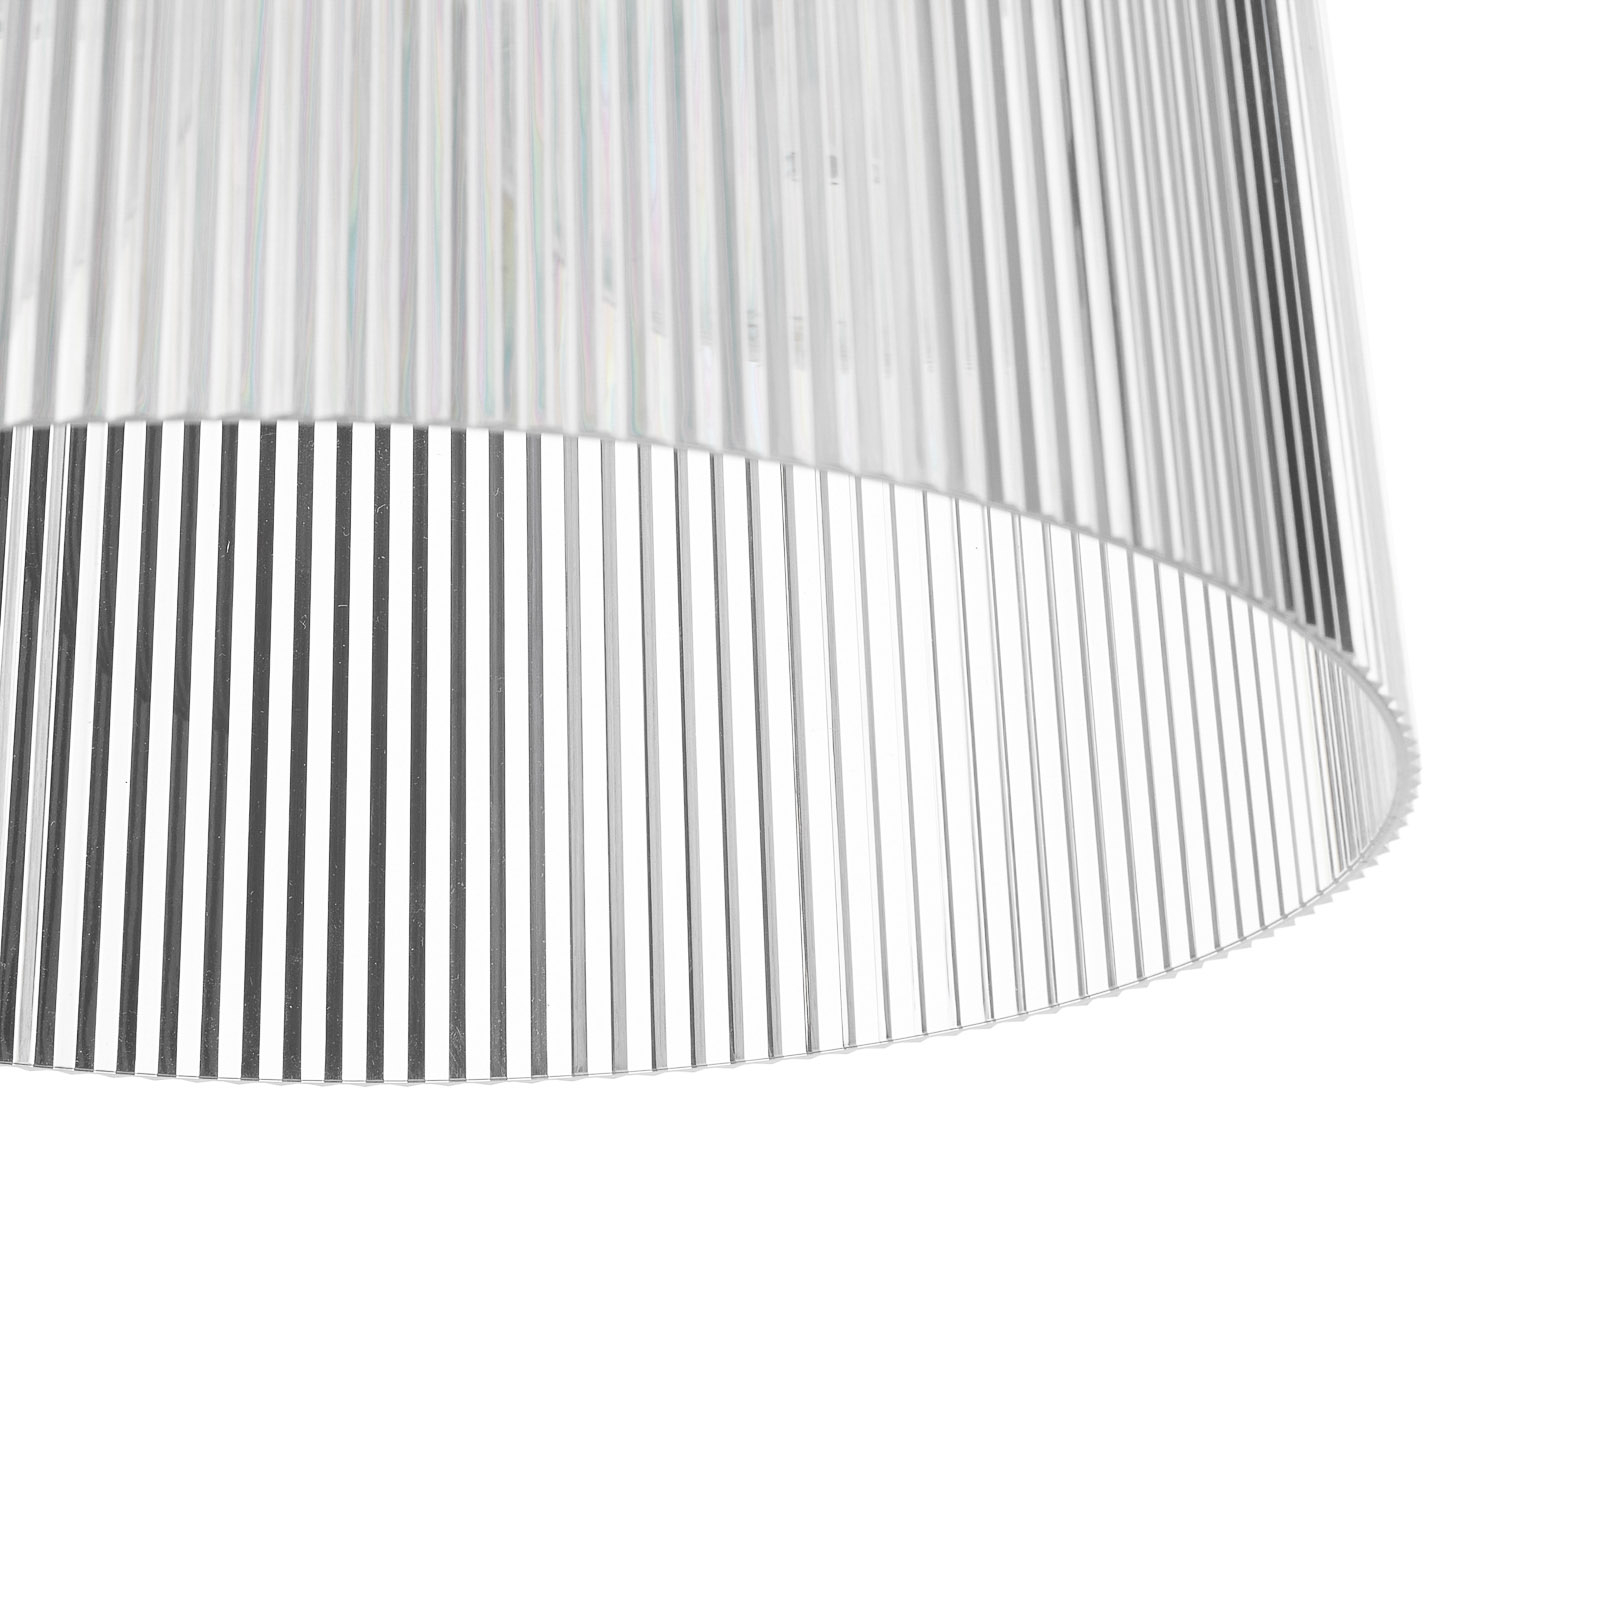 Kartell Gè - lámpara colgante LED, transparente